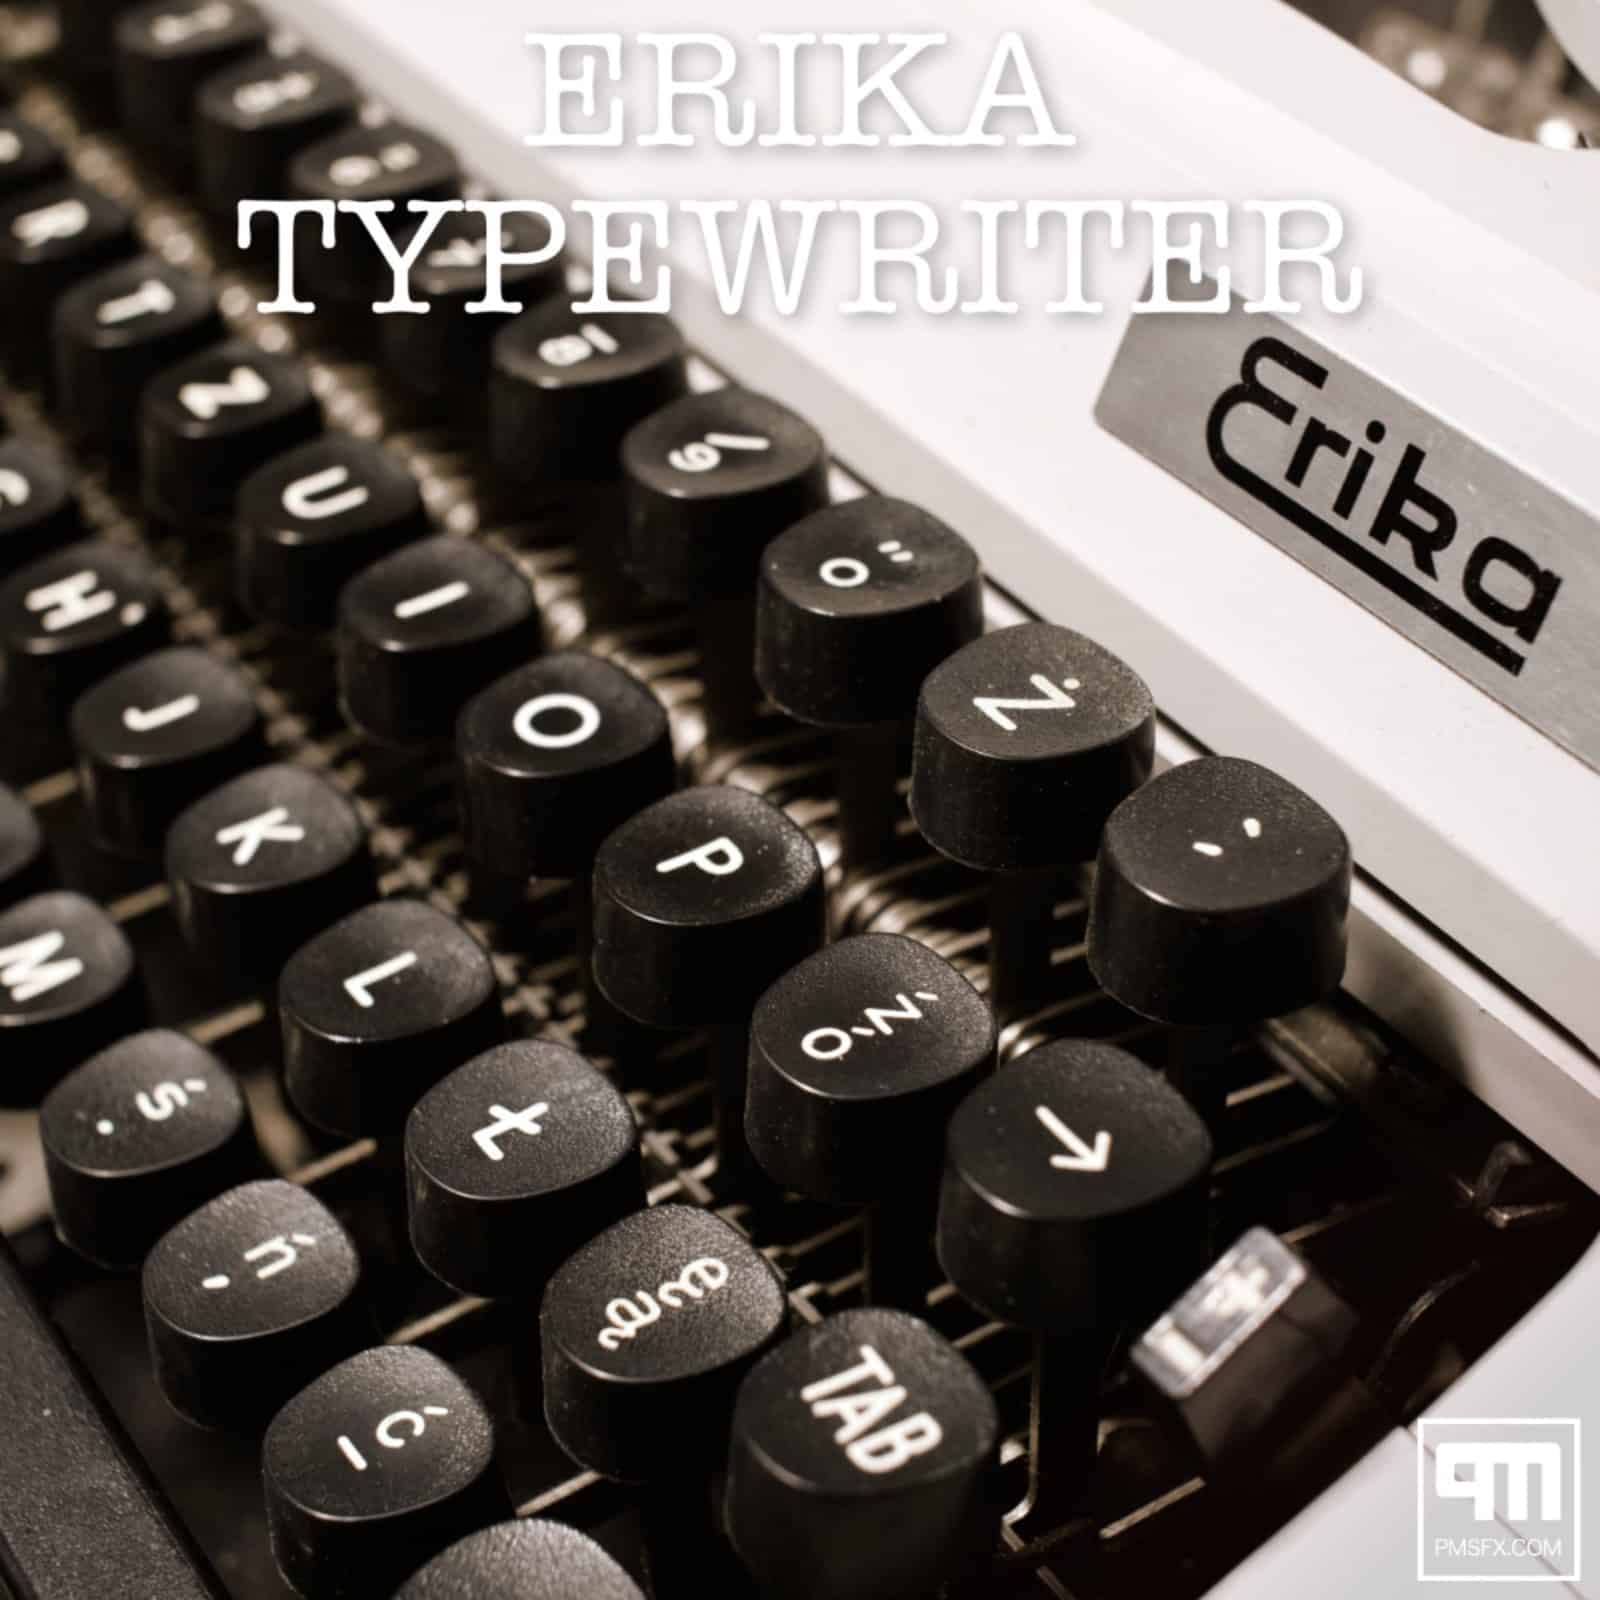 PMSFX Launches Erika Typewriter